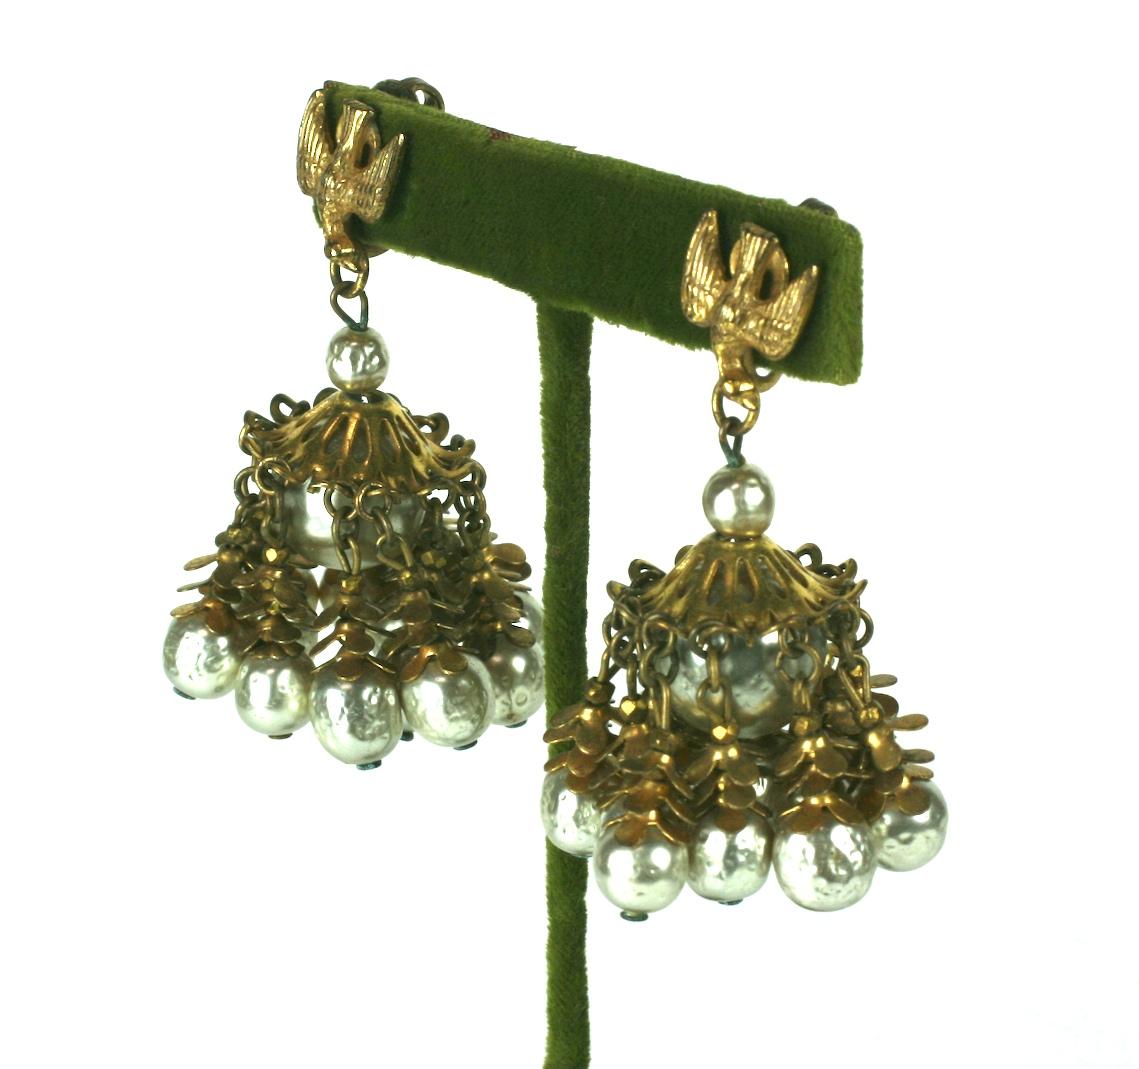 Boucles d'oreilles à pompon en perles Miriam Haskell des années 1940. Le motif d'oiseau signature se trouve sur chaque oreille, avec une grande perle et un pendentif à pompon coiffé de dorures russes.
Une échelle frappante avec un grand mouvement,